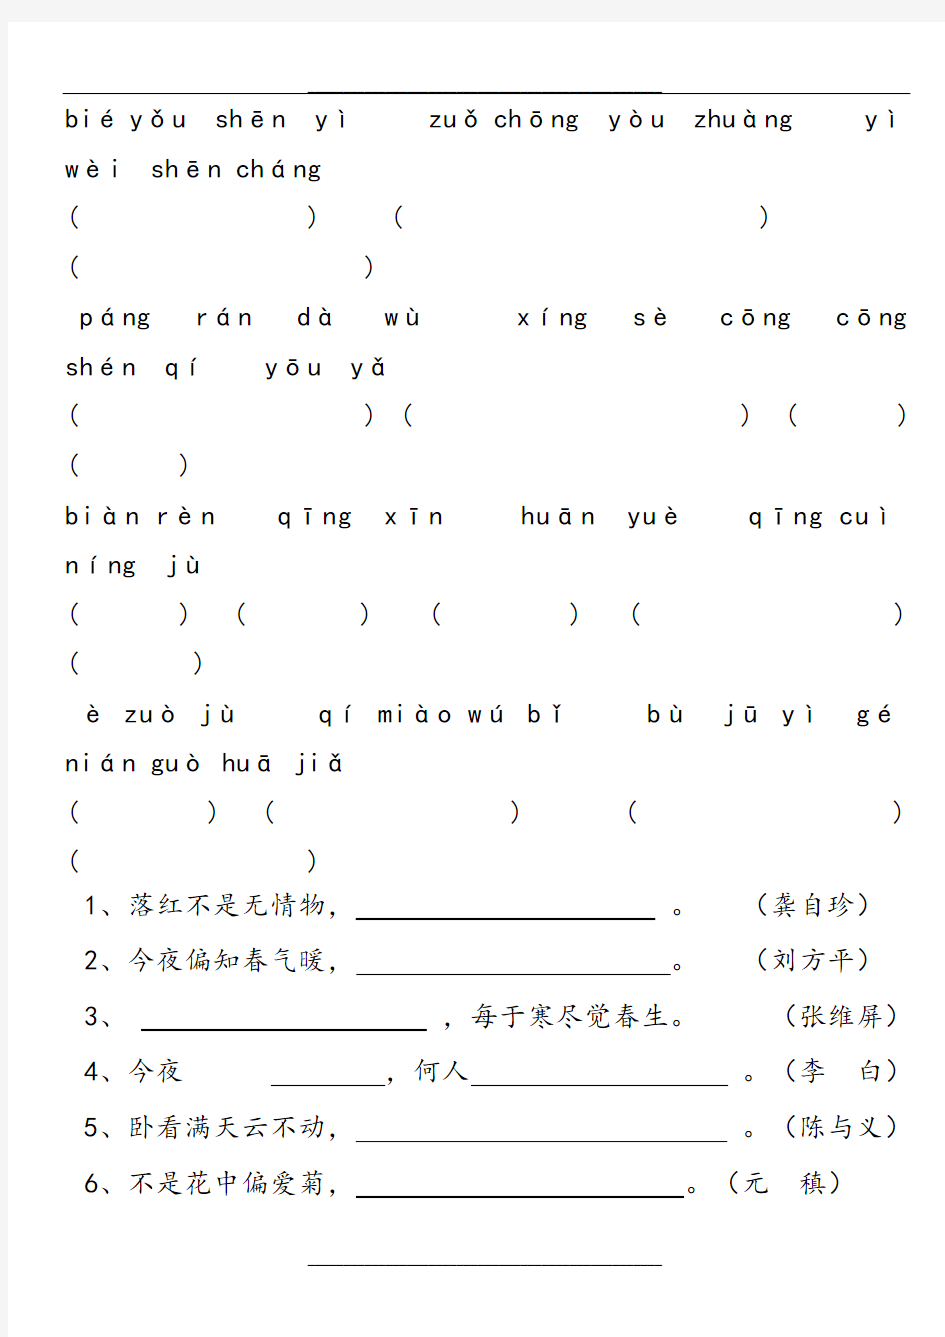 人教版六年级语文上册看拼音写汉字所有词语 2